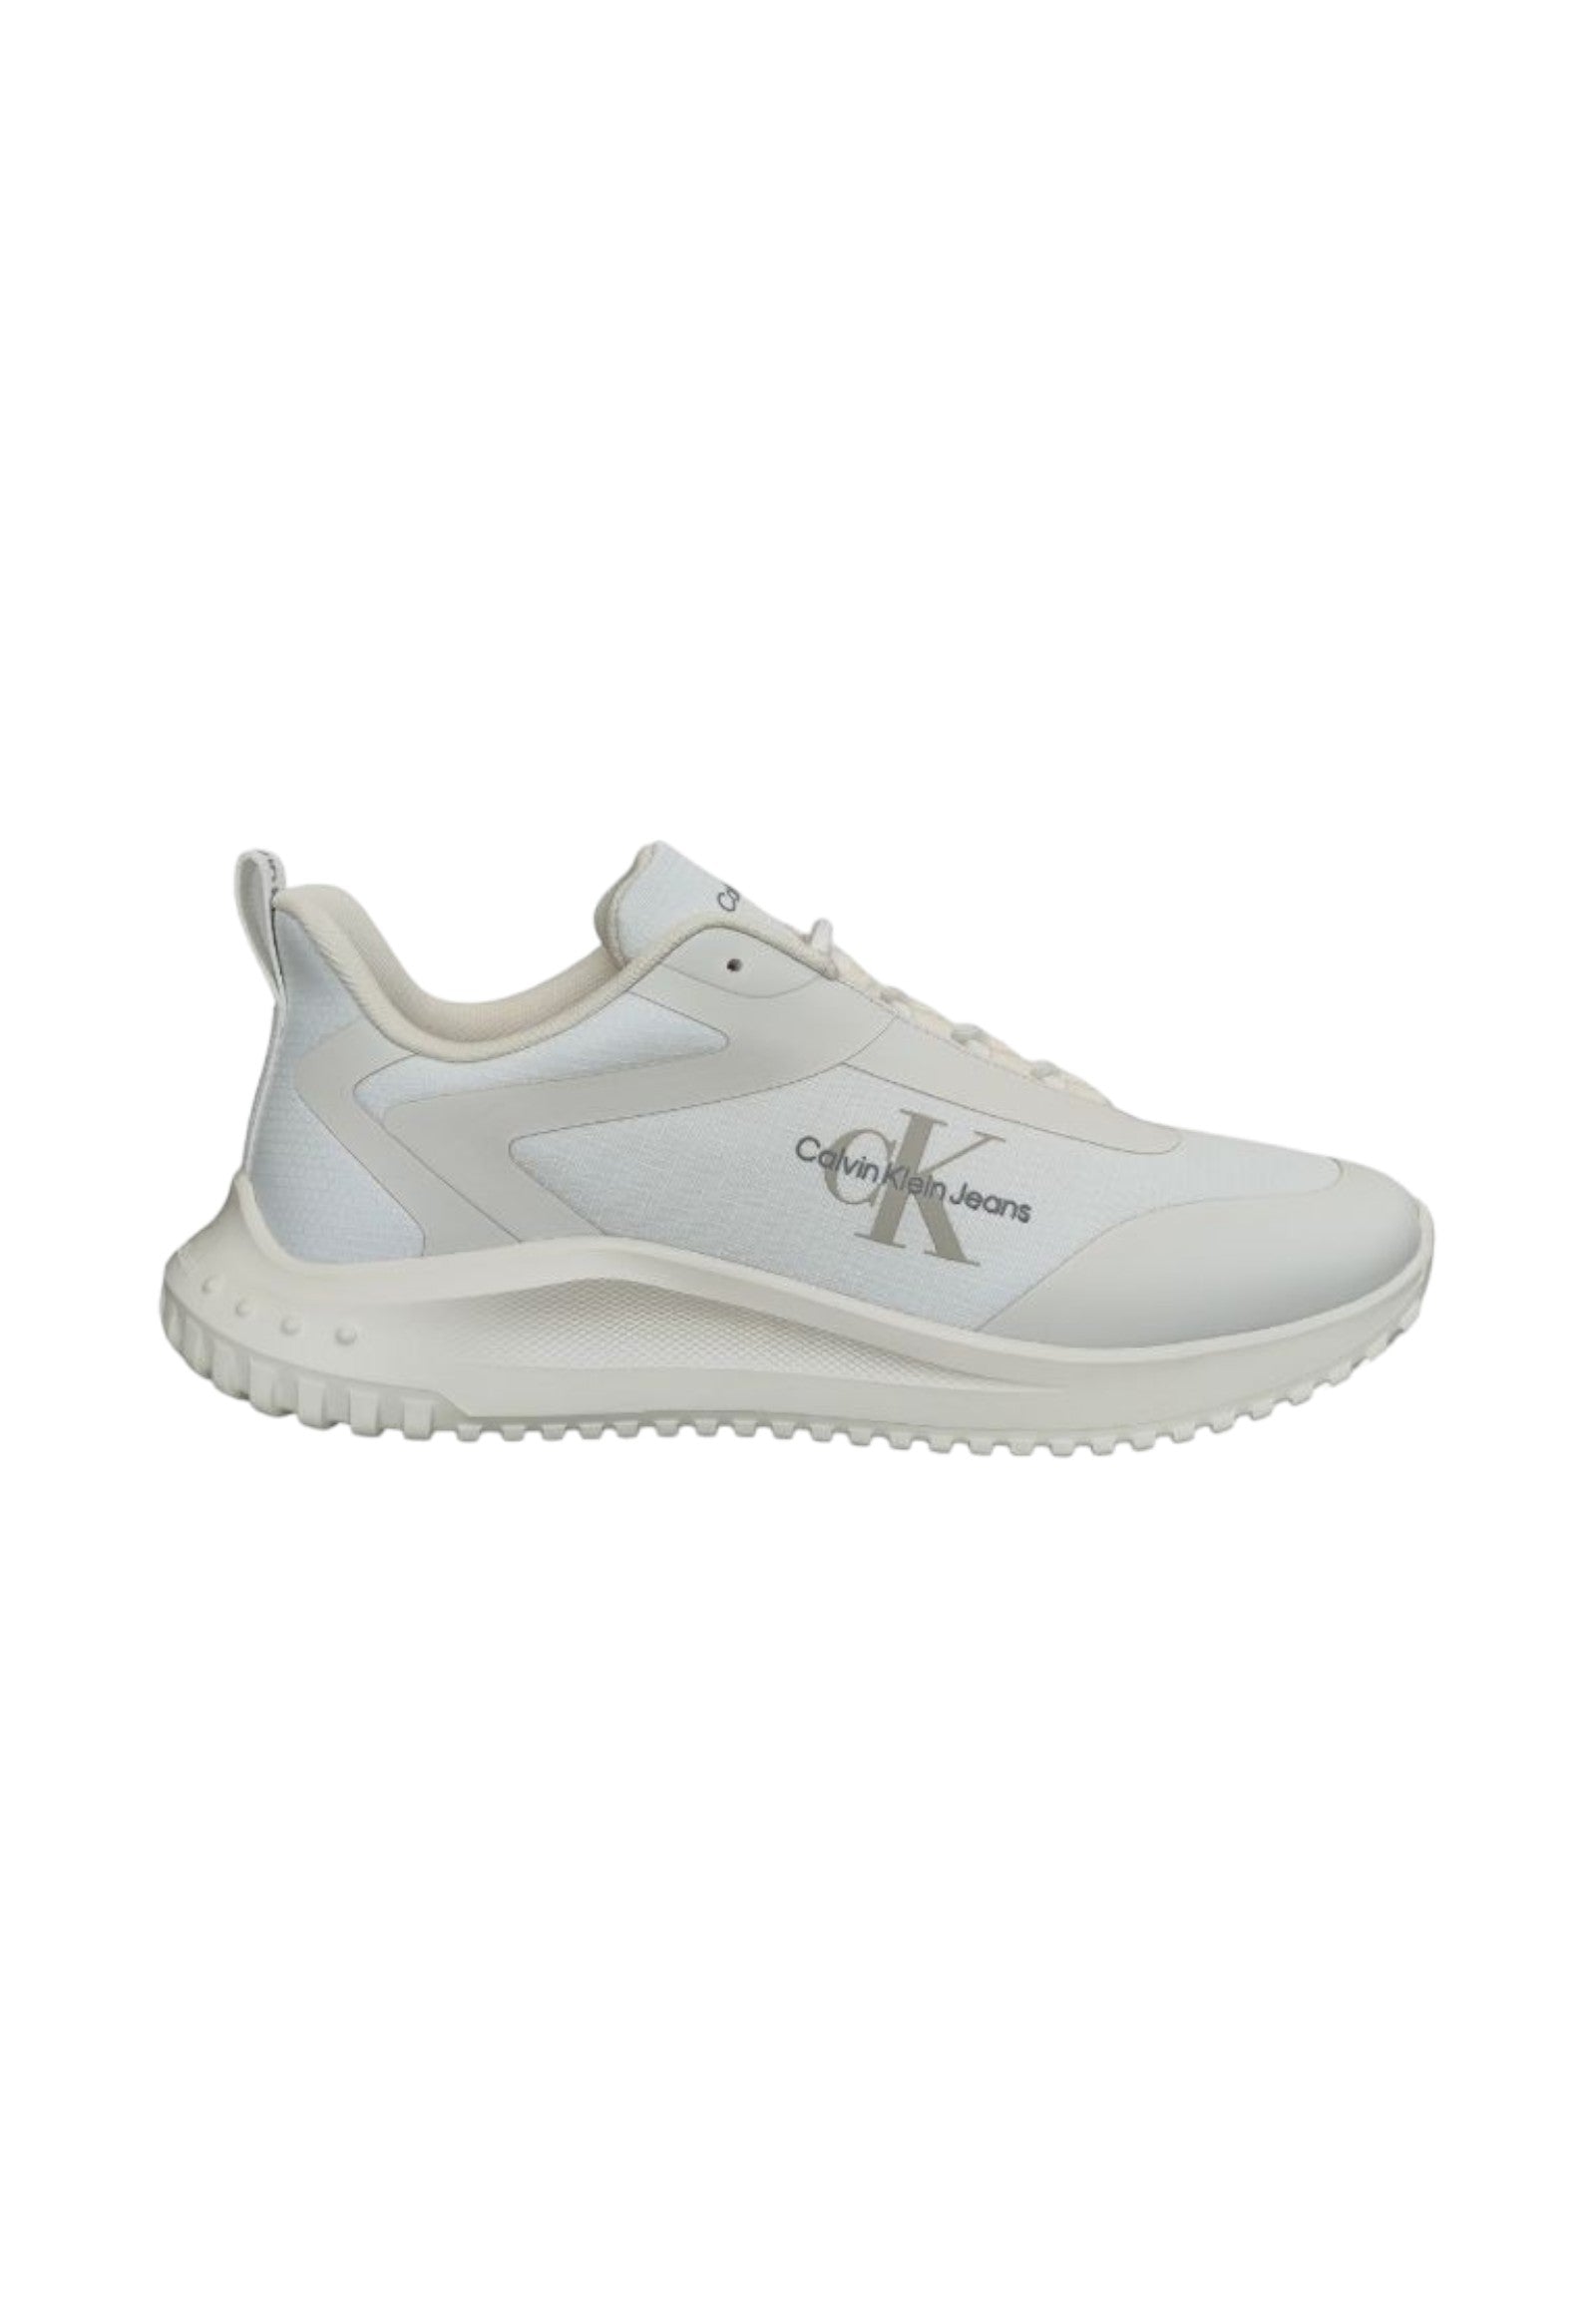 Sneakers Ym0ym00968 Bright WhitE- C WhitE- Eggshel